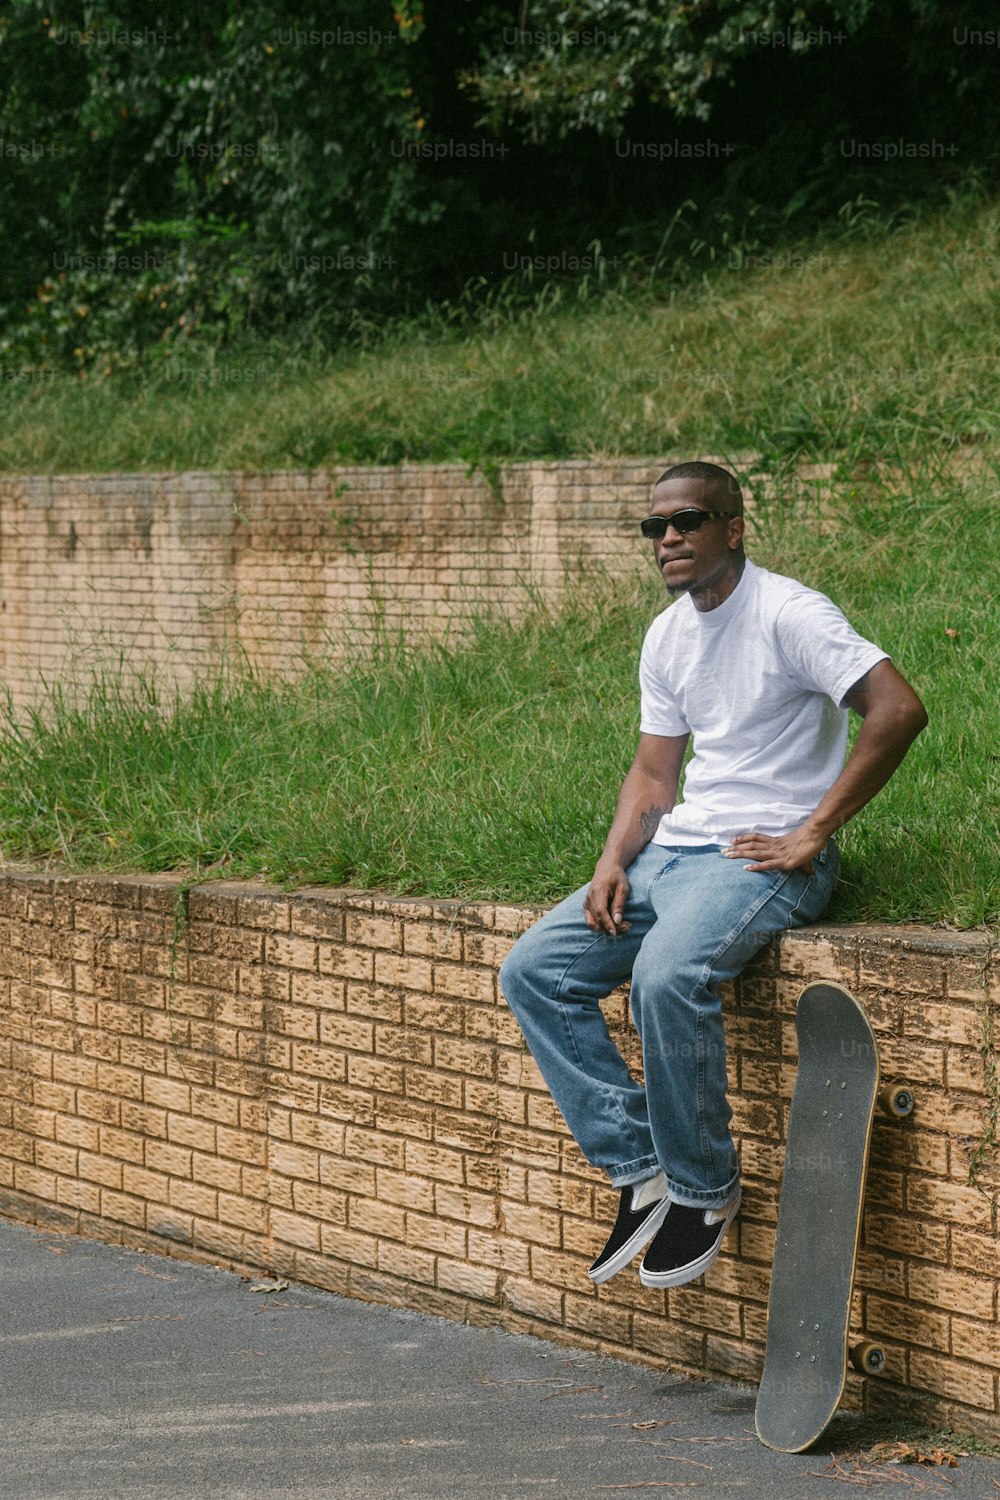 Ein Mann, der mit einem Skateboard auf einer Ziegelmauer sitzt